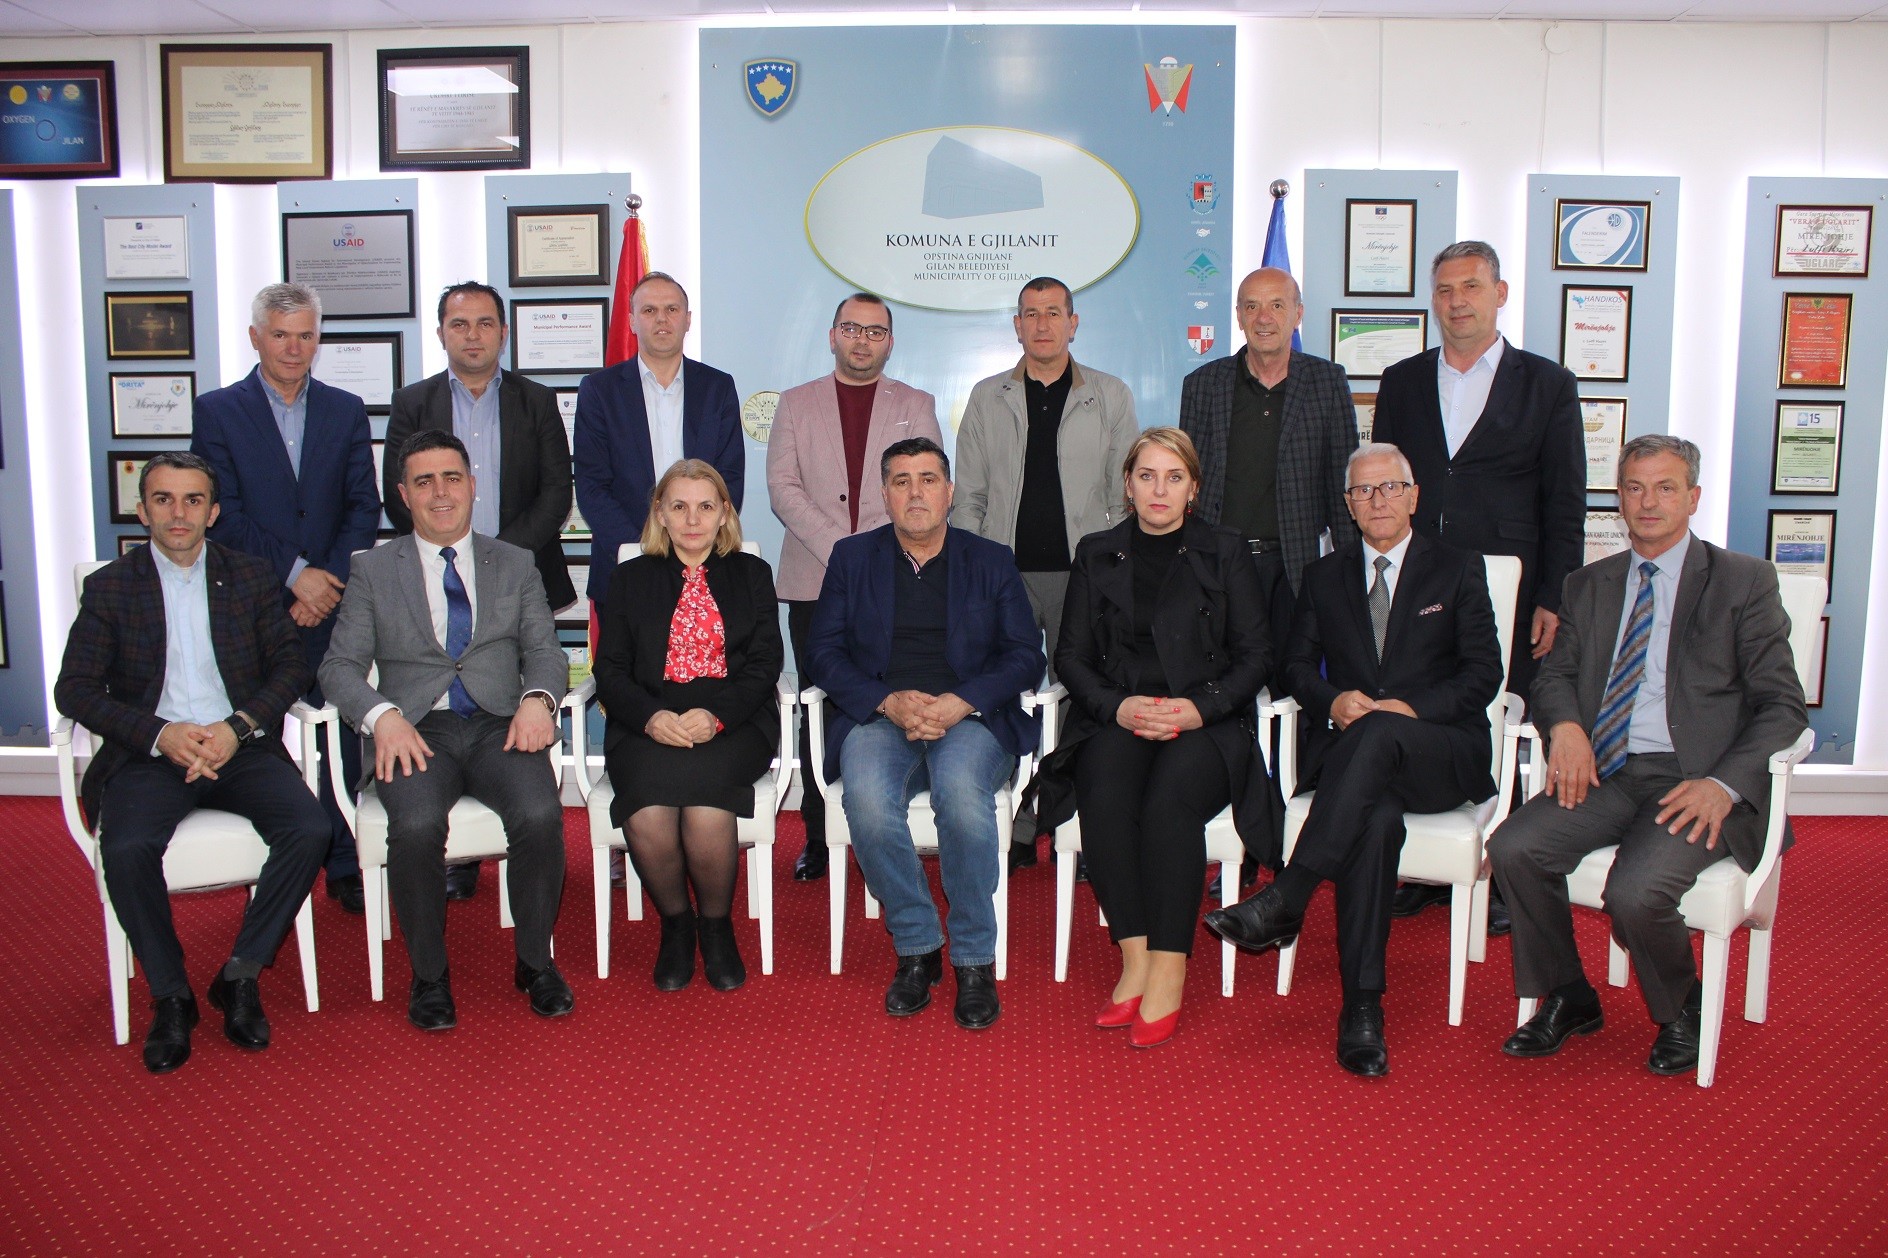 Komuna e Gjilanit fillon grumbullimin e borxheve përmes përmbaruesve